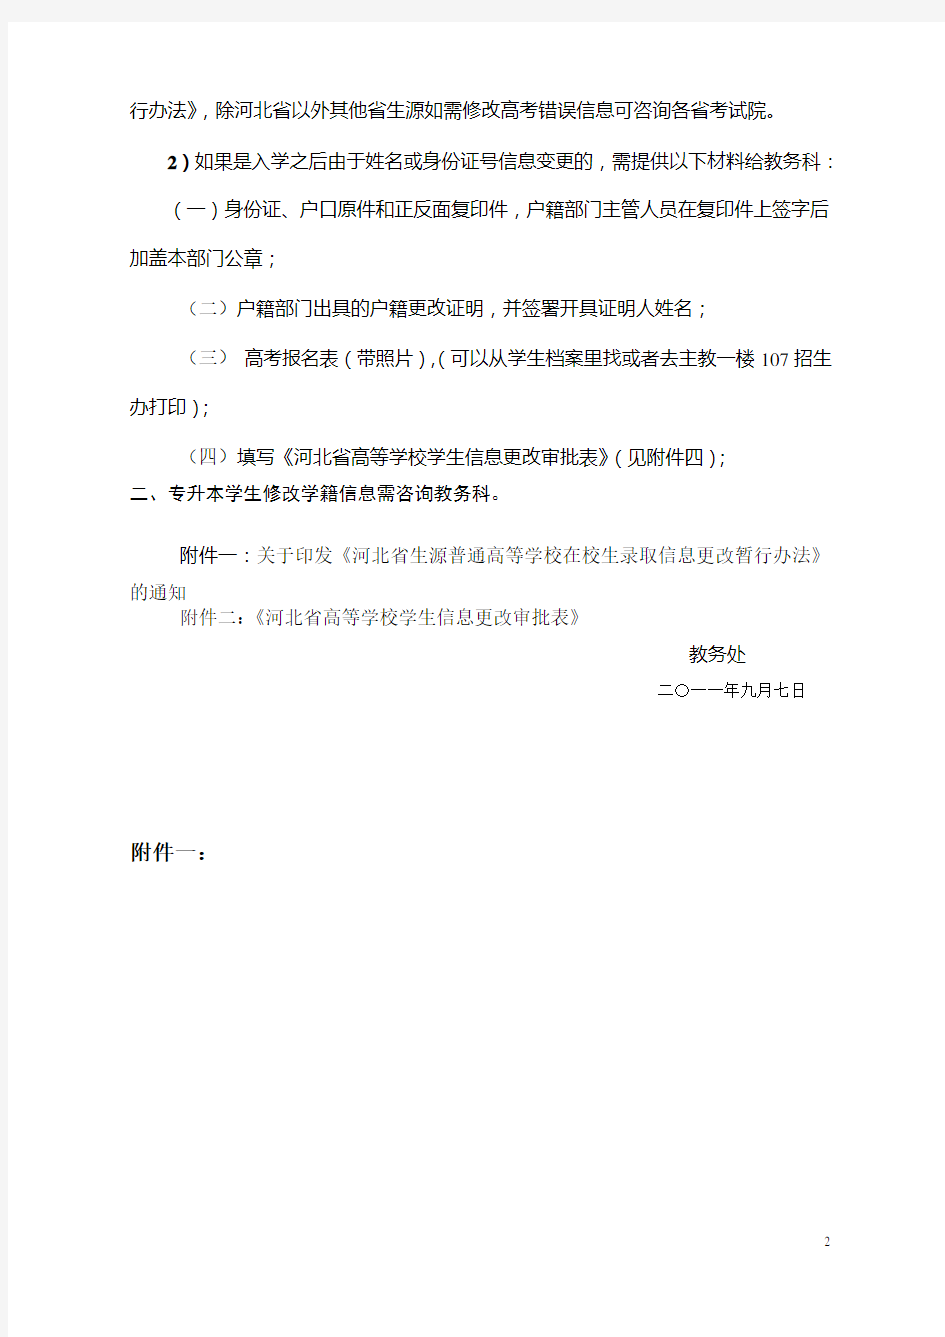 河北省高校在校生修改学籍信息的要求